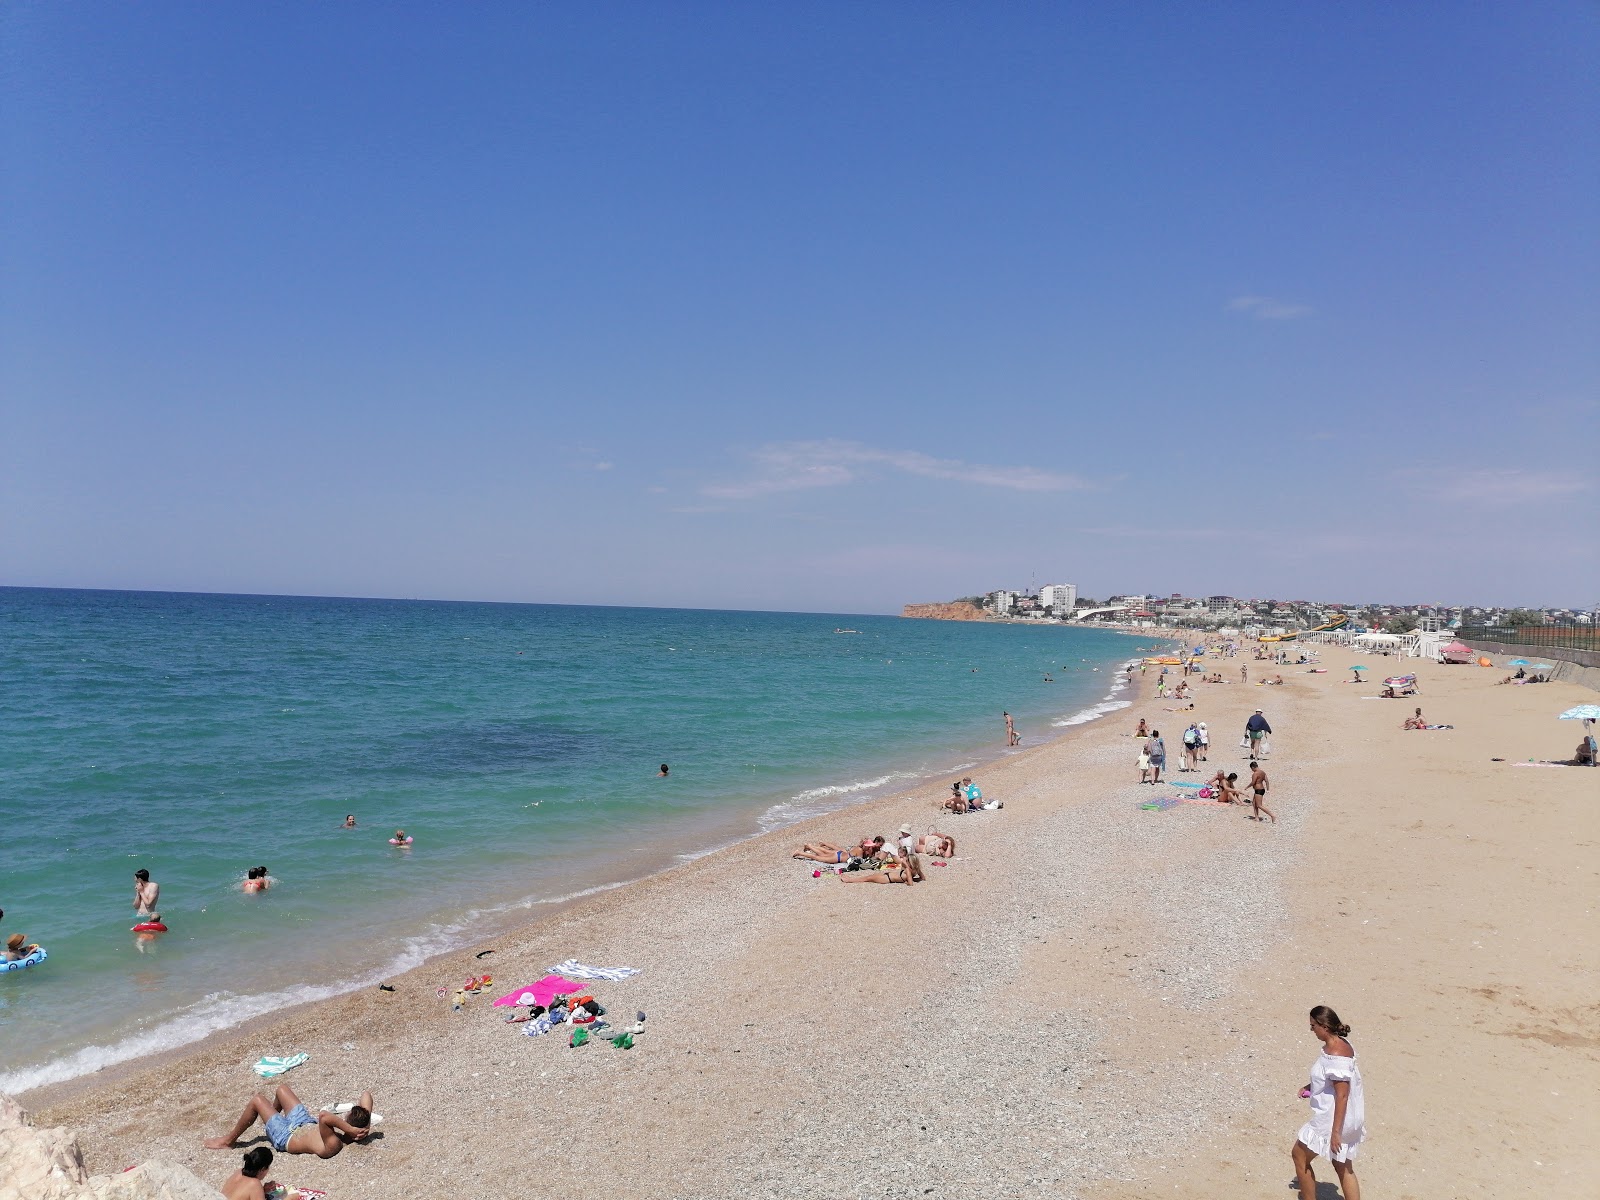 Orlovka beach'in fotoğrafı turkuaz saf su yüzey ile